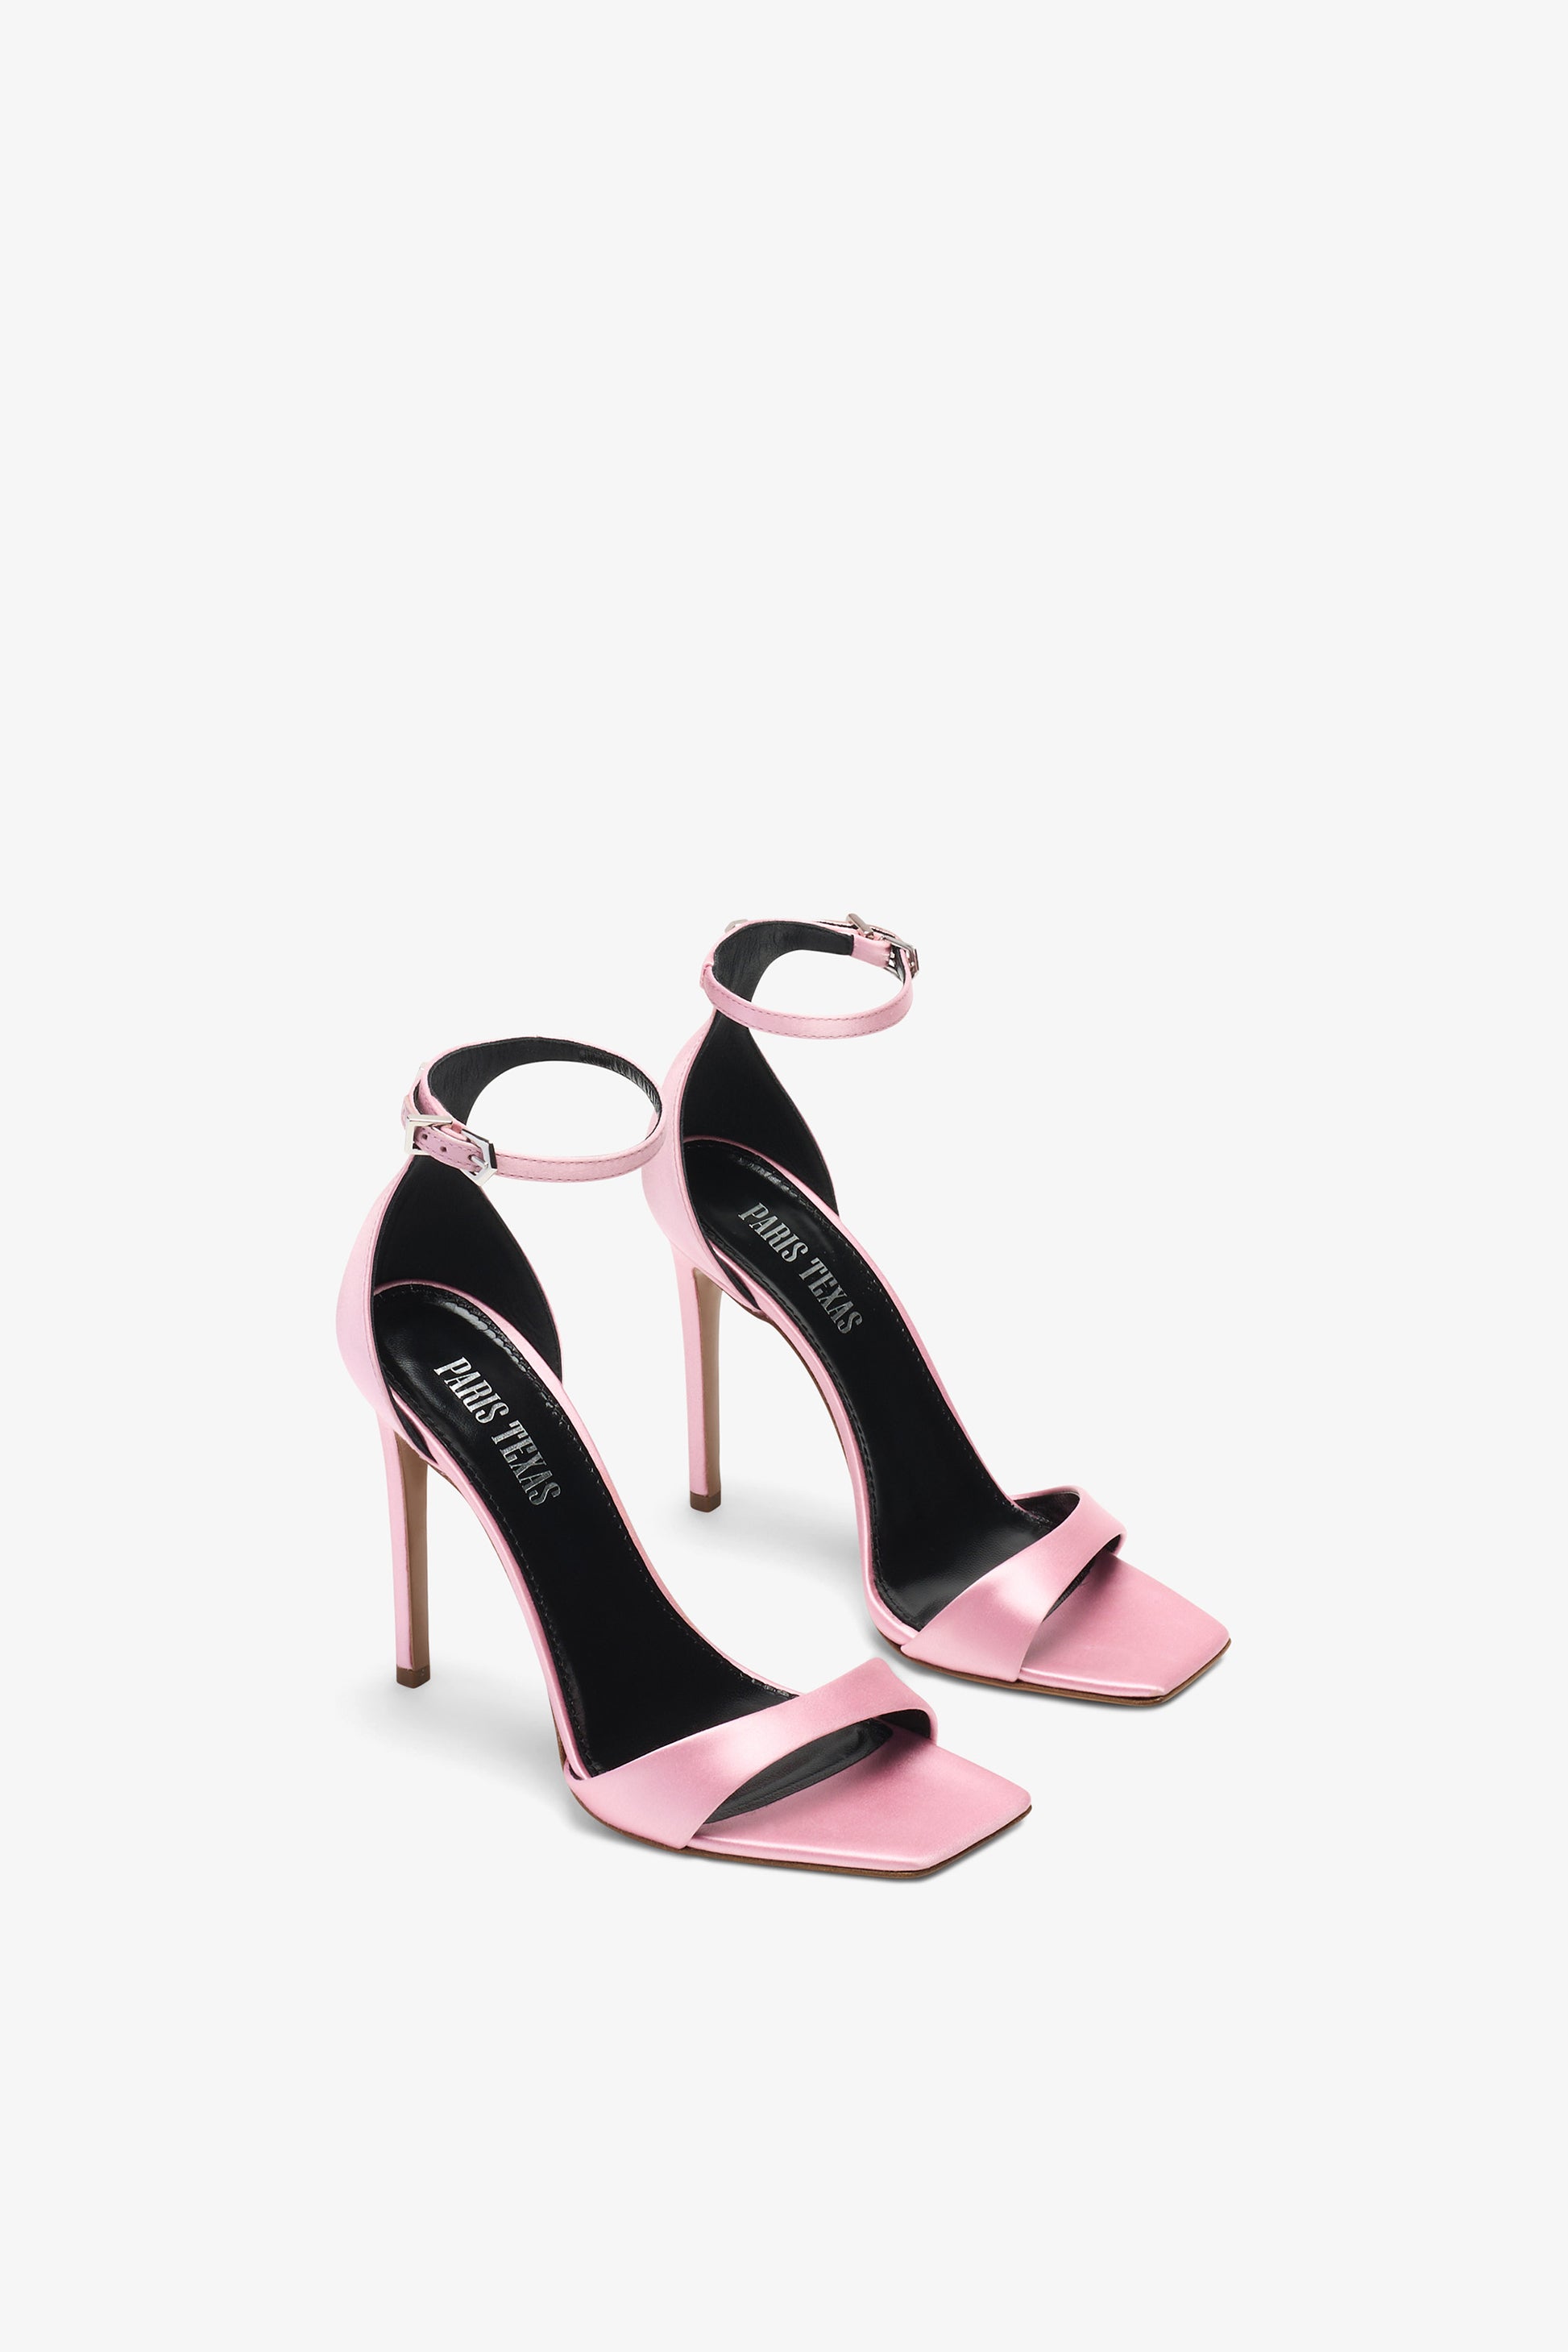 Sandalo con tacco a stiletto in pelle rosa lucente